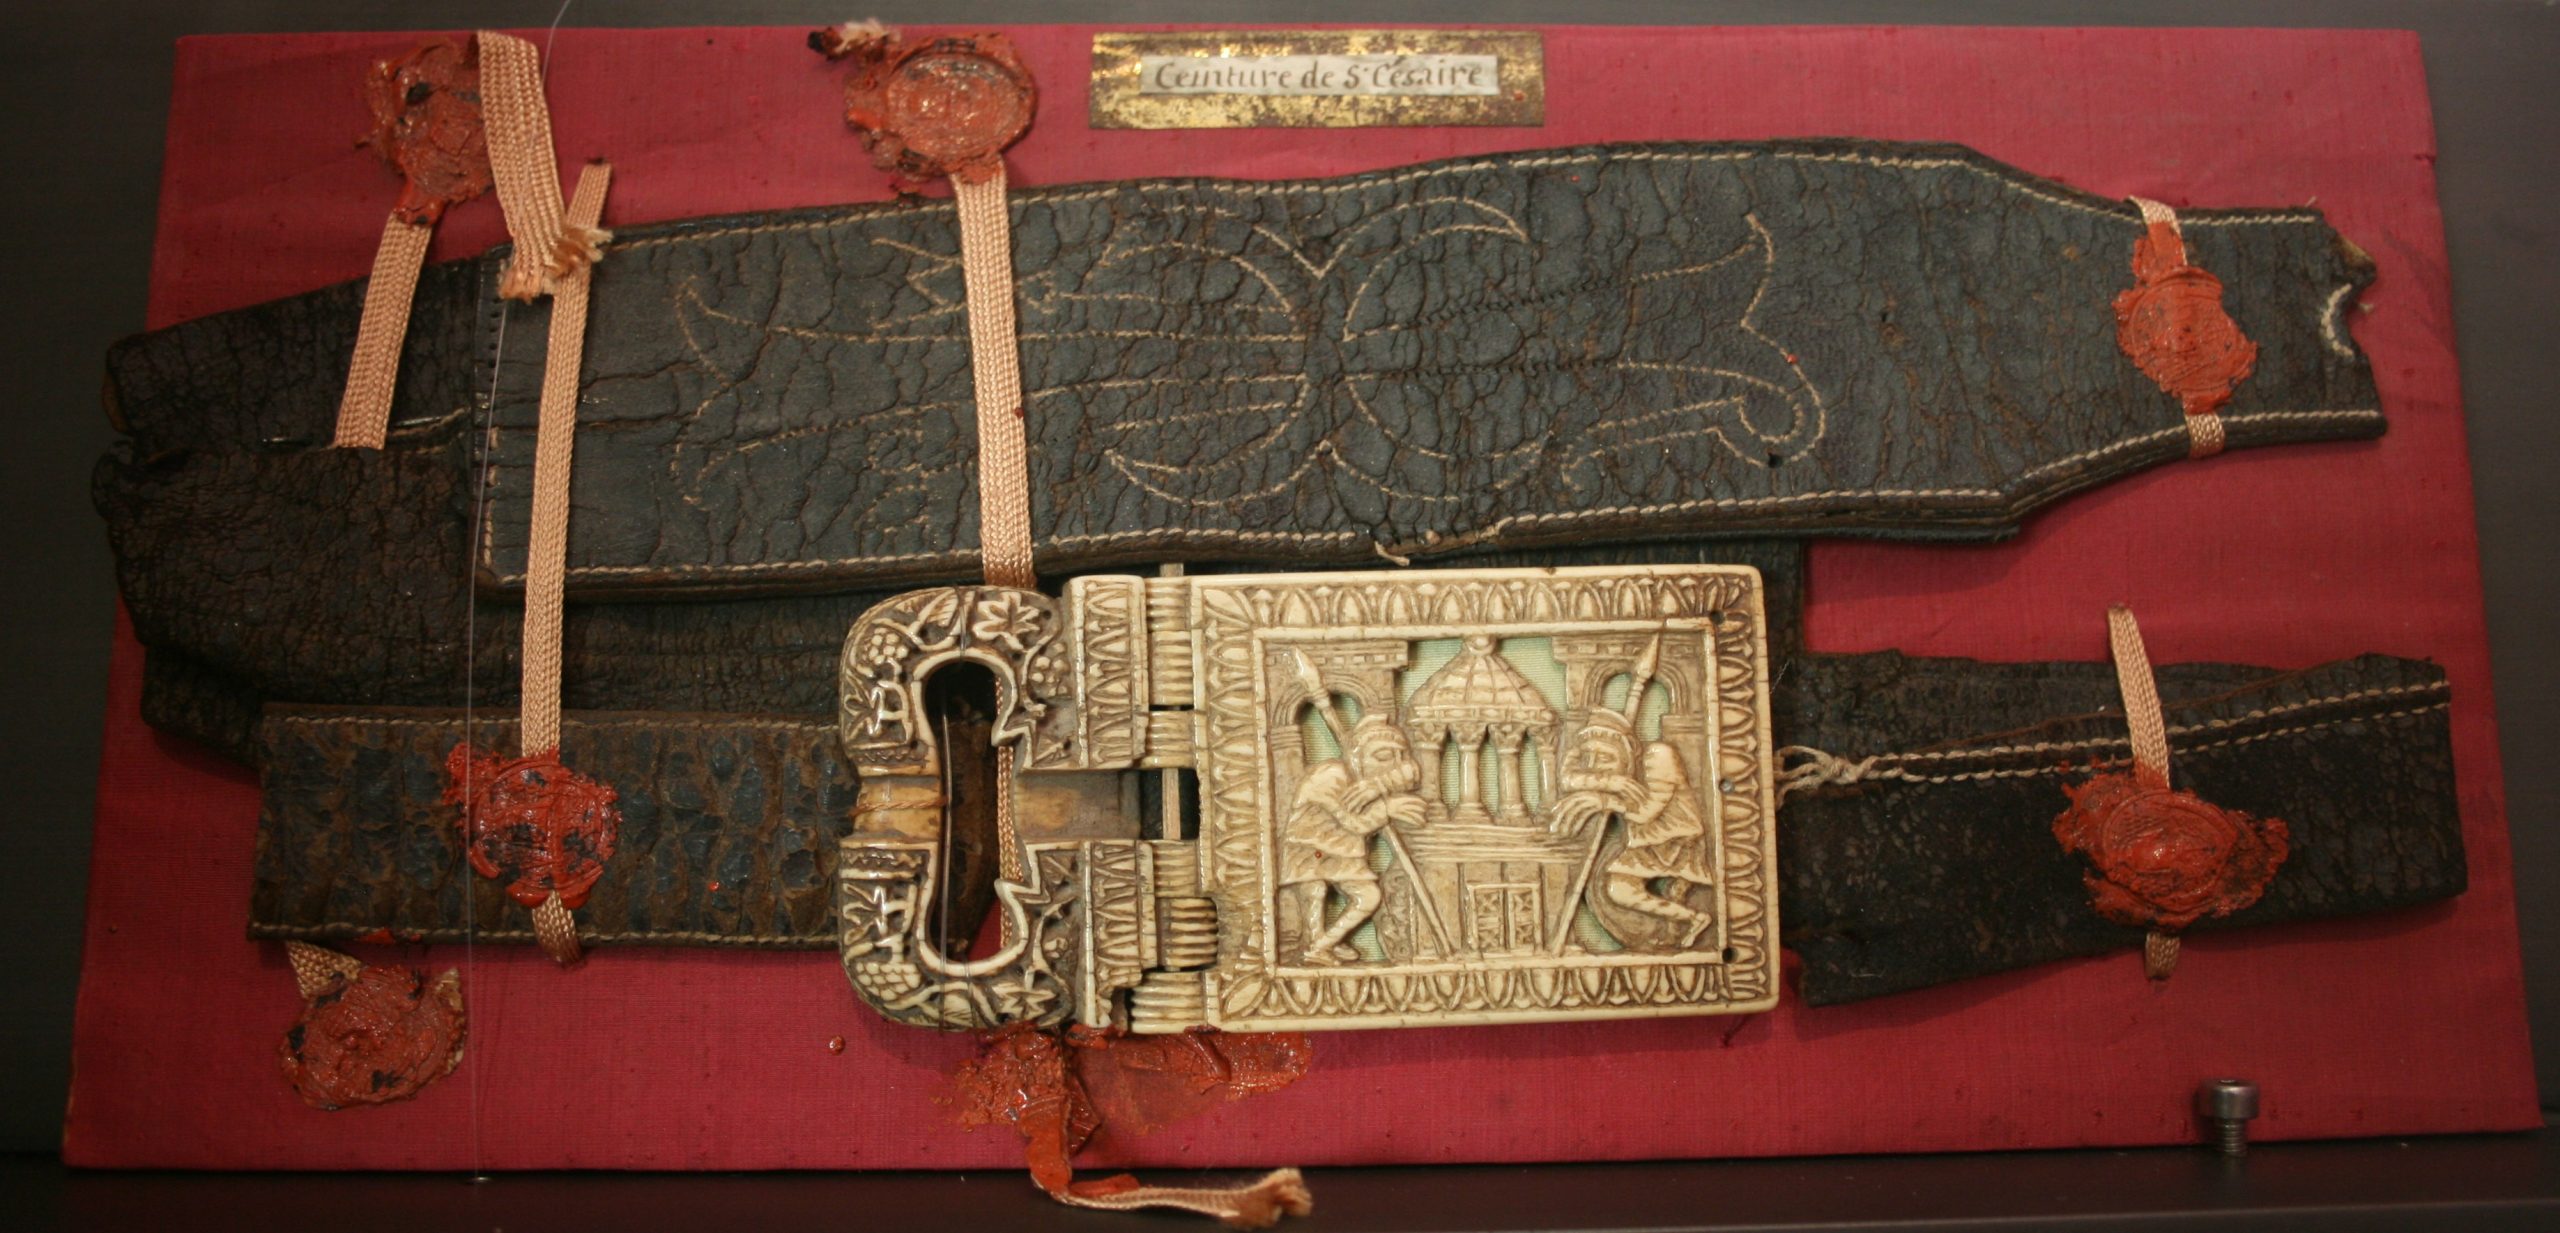 El cinturón y la hebilla de marfil de san Cesáreo, conservados en el "Musée départemental Arles antique".